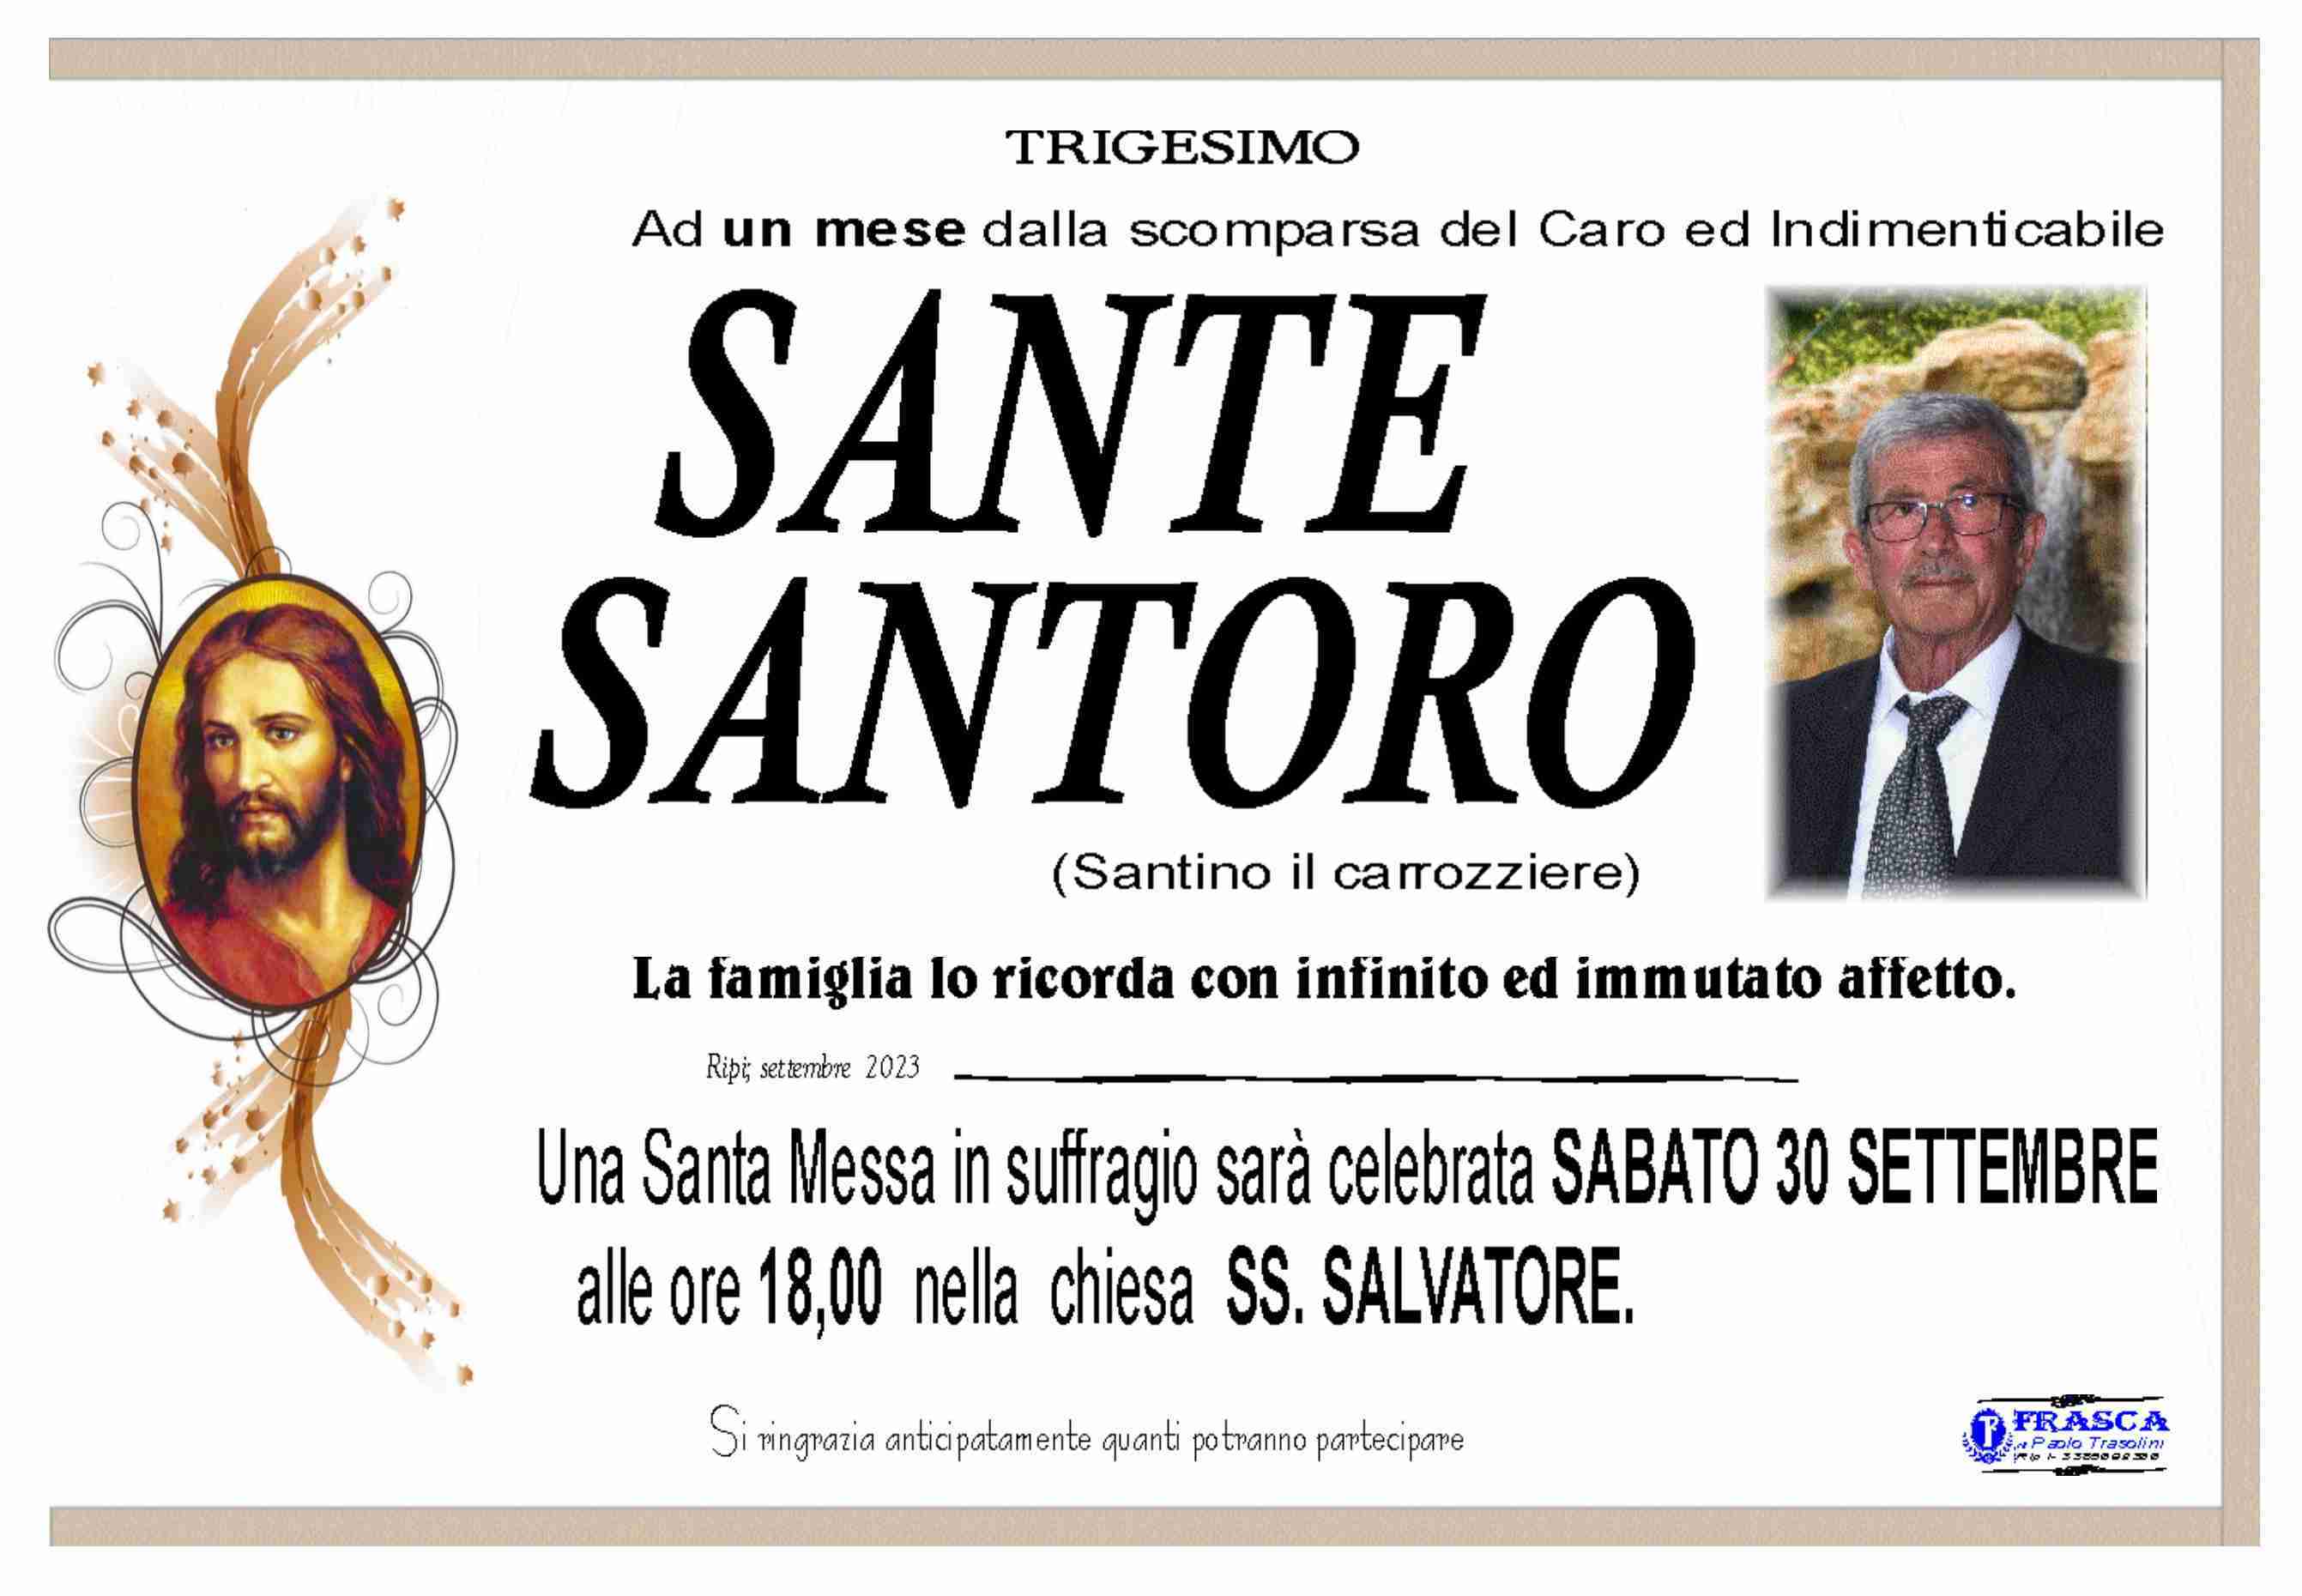 Sante Santoro